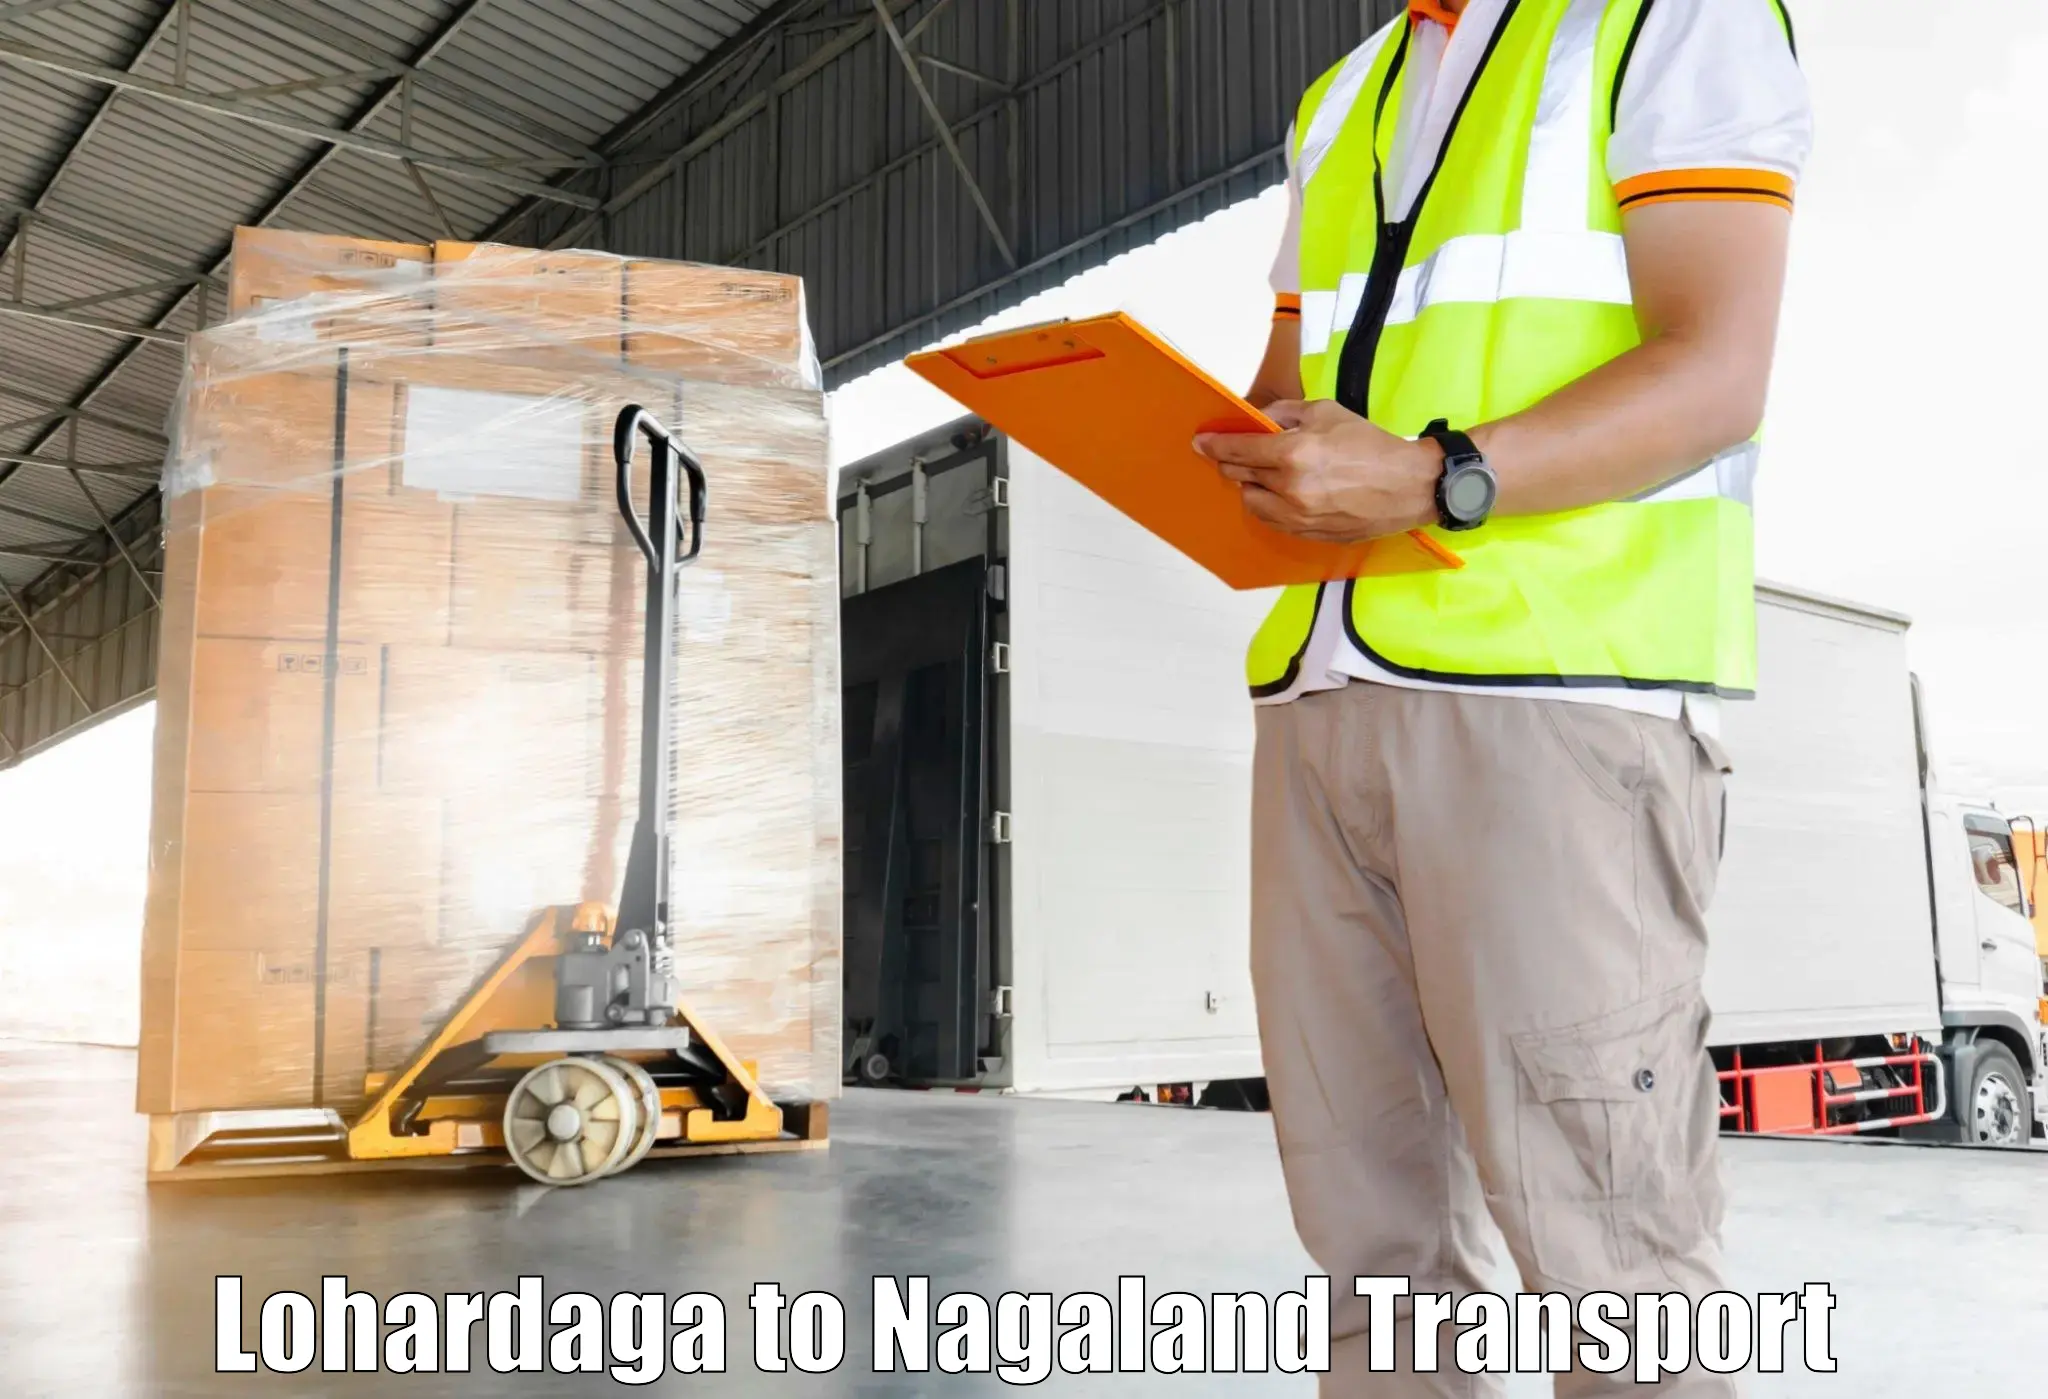 Scooty transport charges Lohardaga to Nagaland